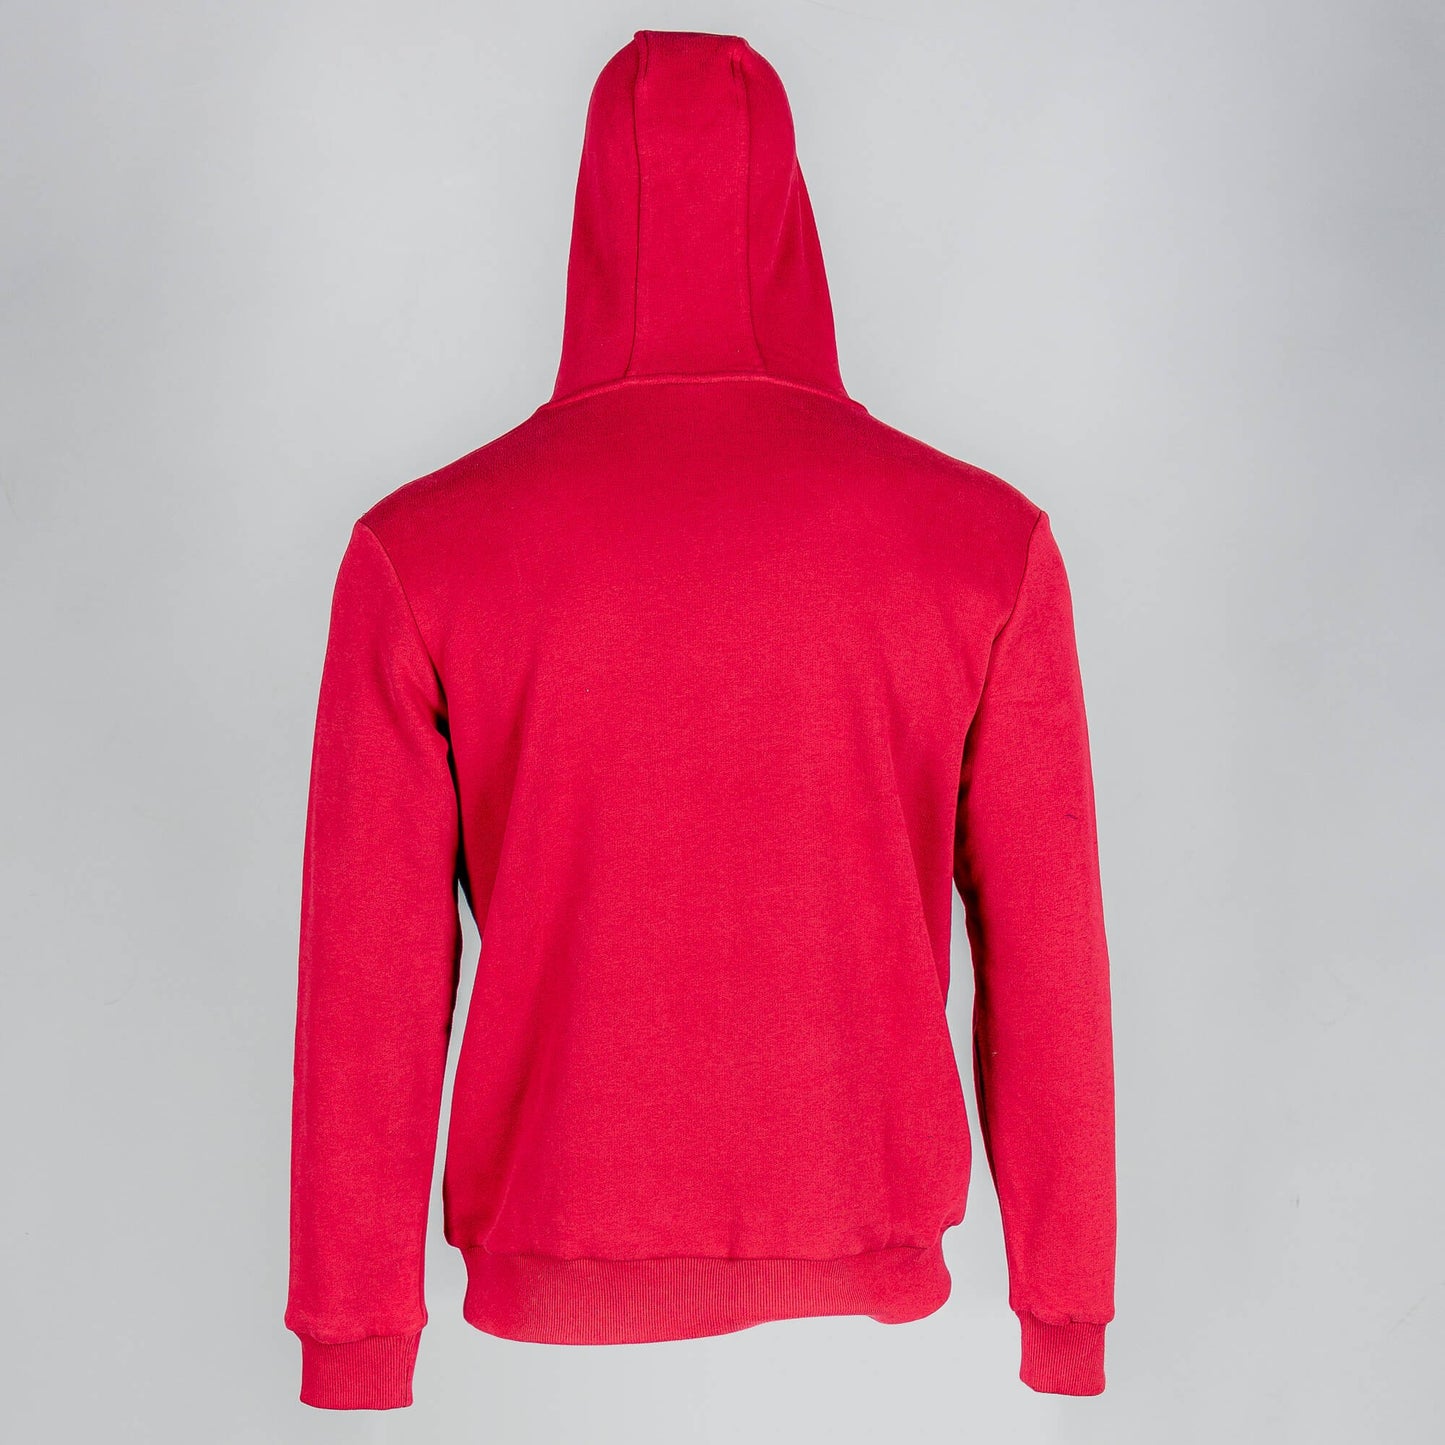 Peak Hoodie Sweater - Rumba Red